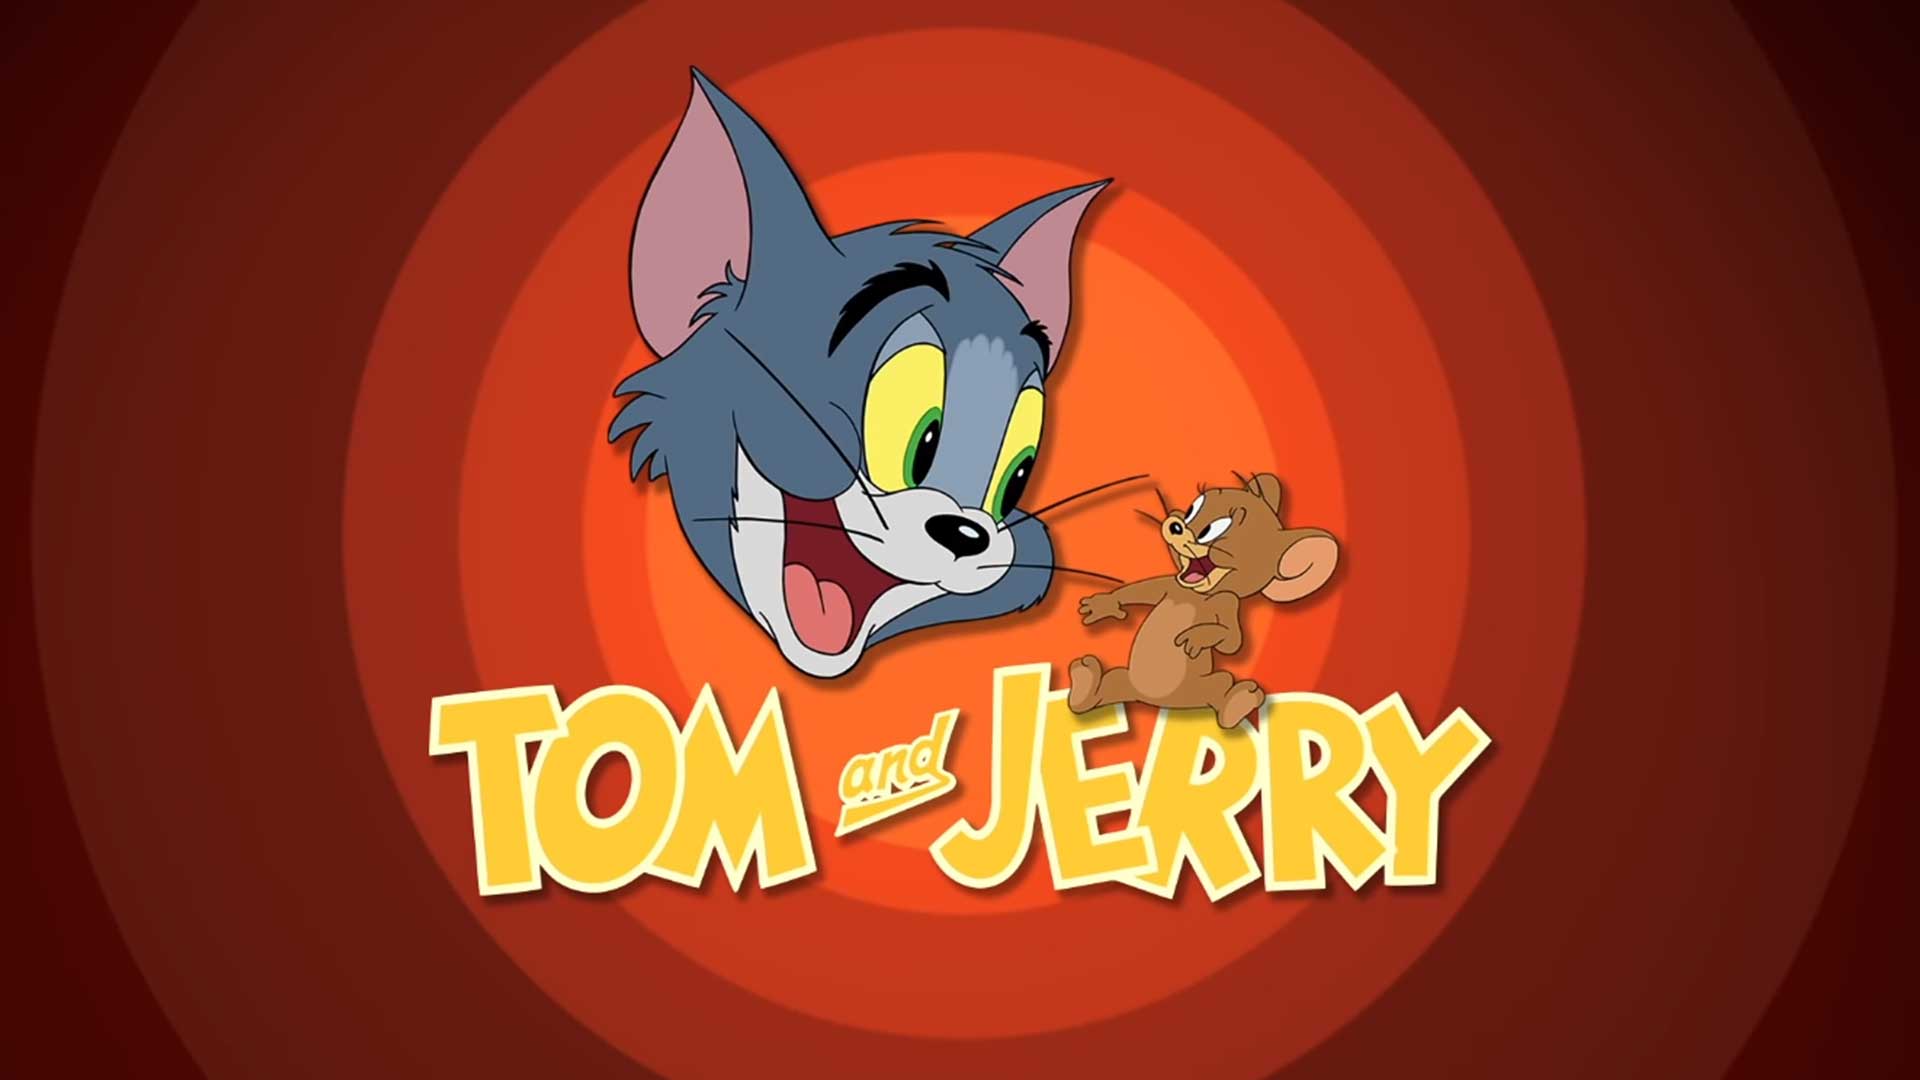 Том и Джерри – 52 серия «Том и Джерри в Голливуд-боул» / Tom and Jerry